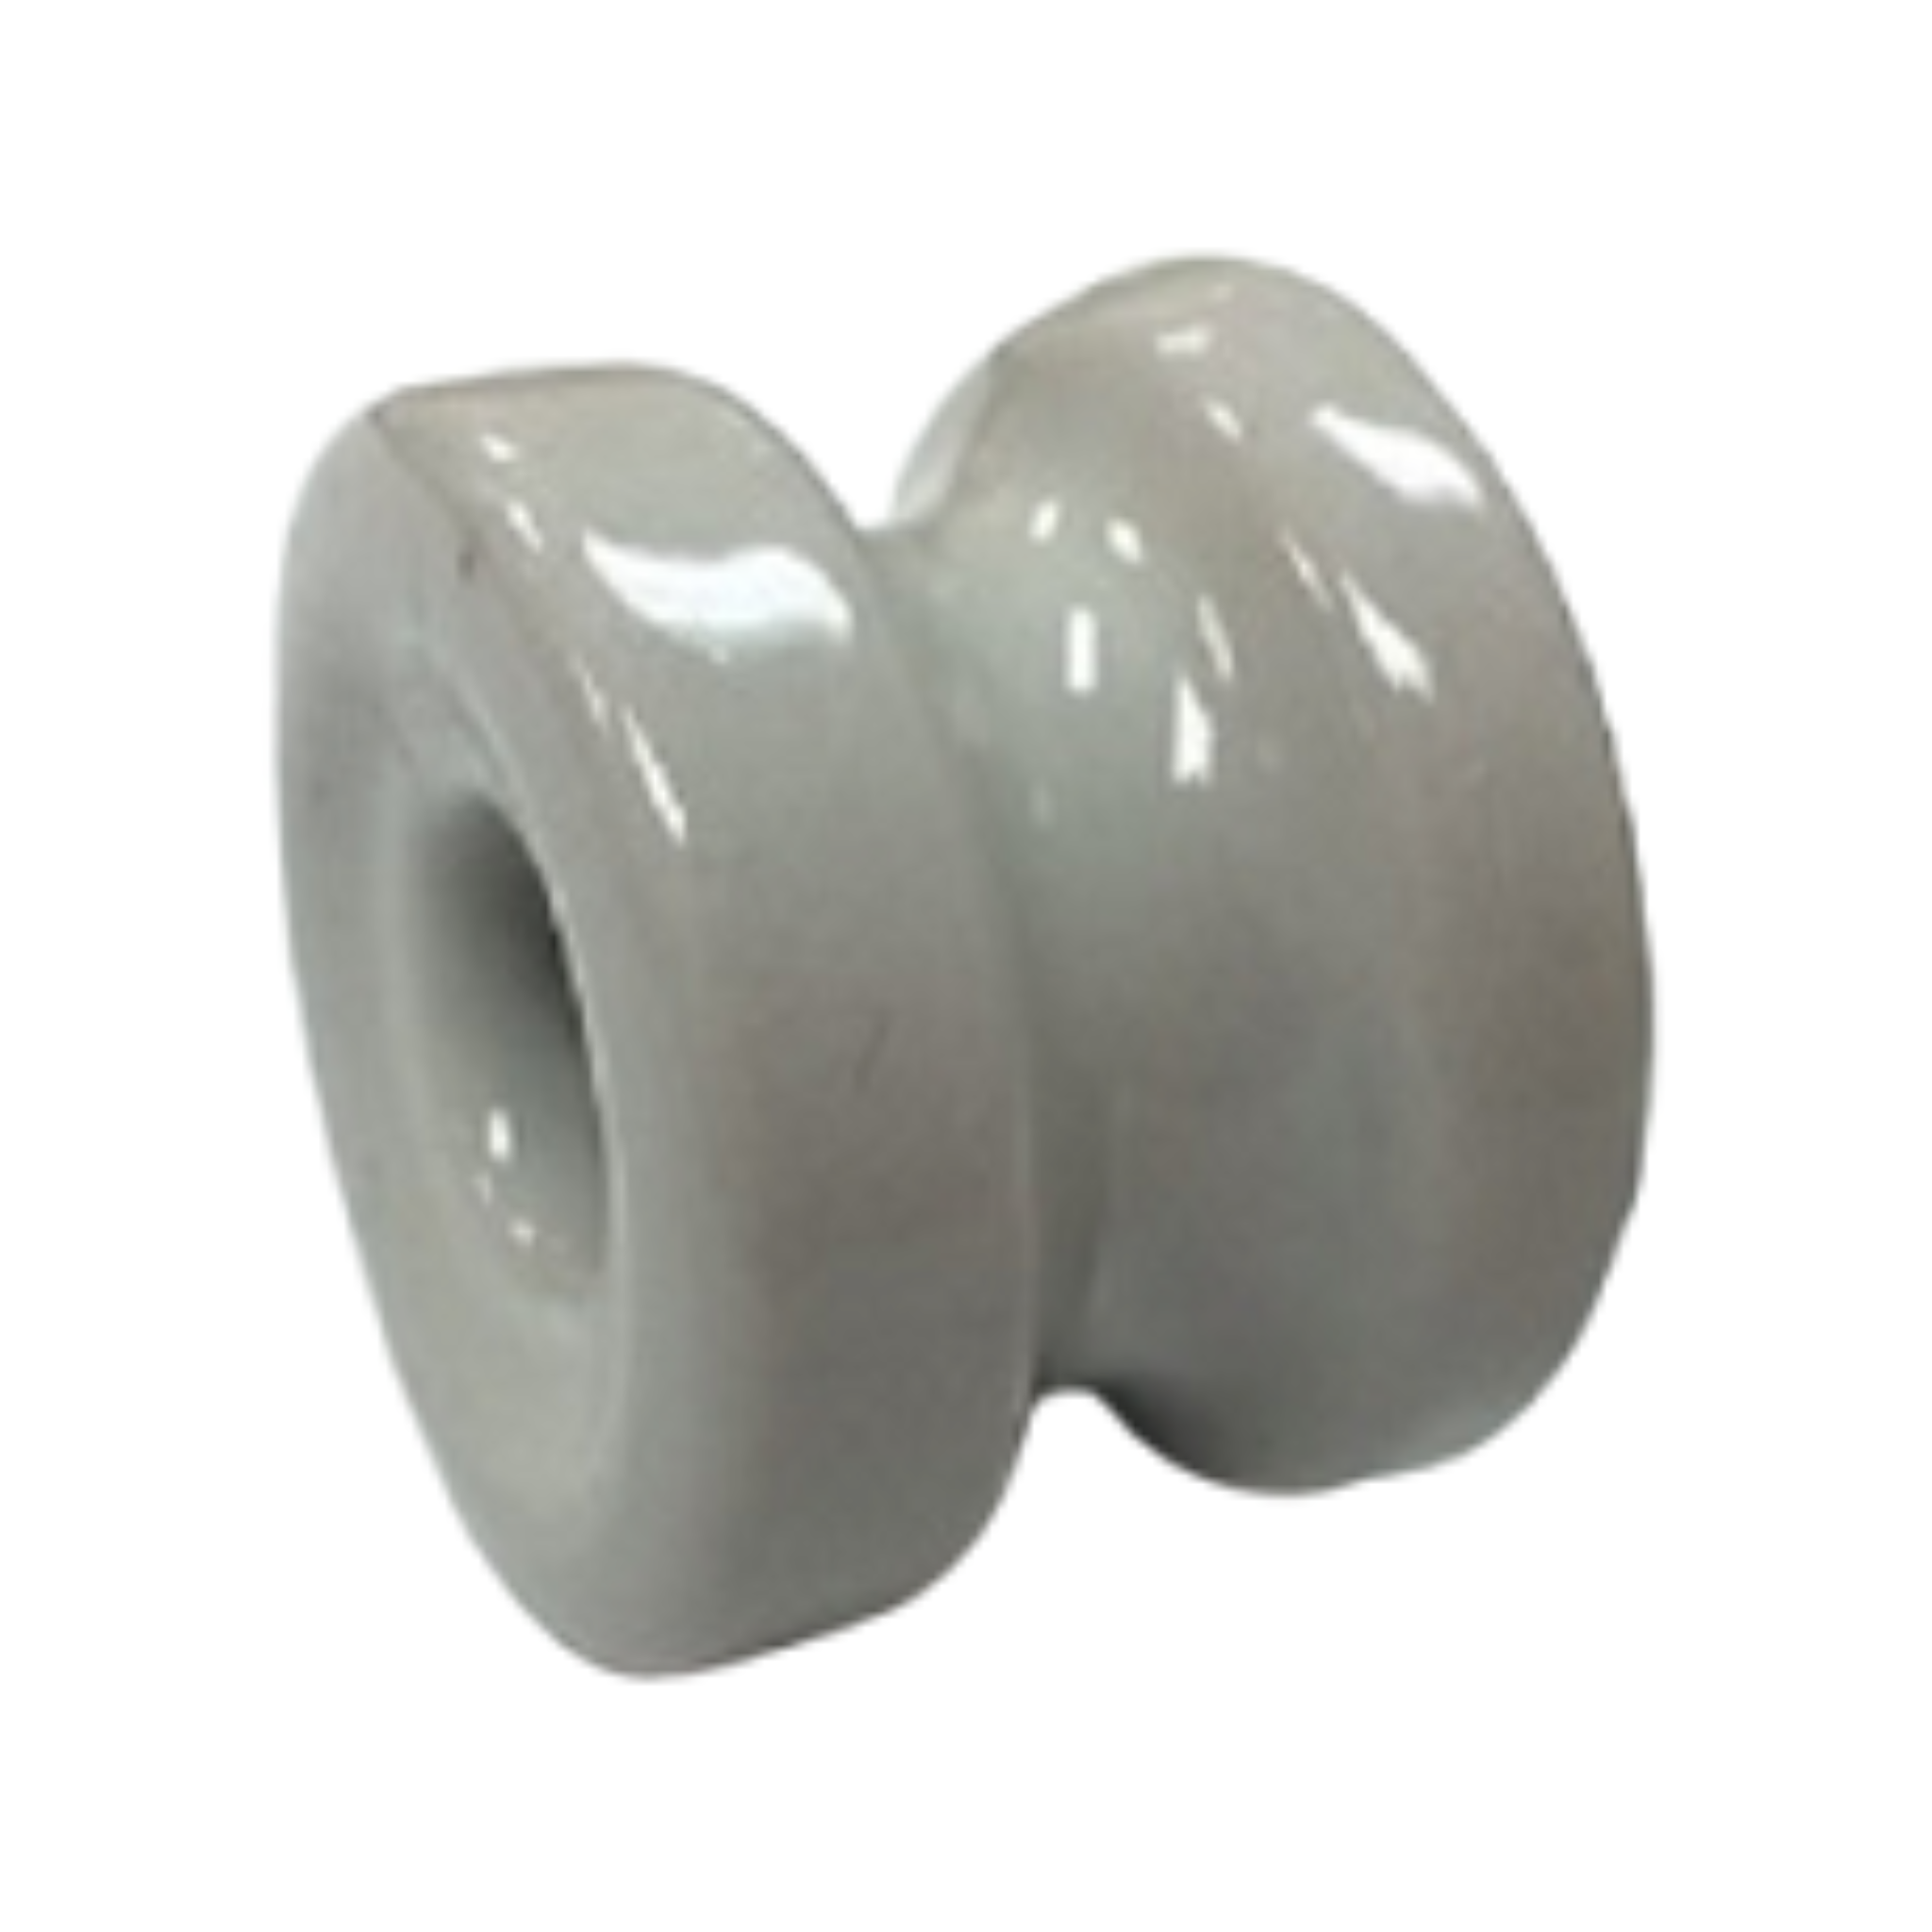 1.75" Porcelain Donut Insulator